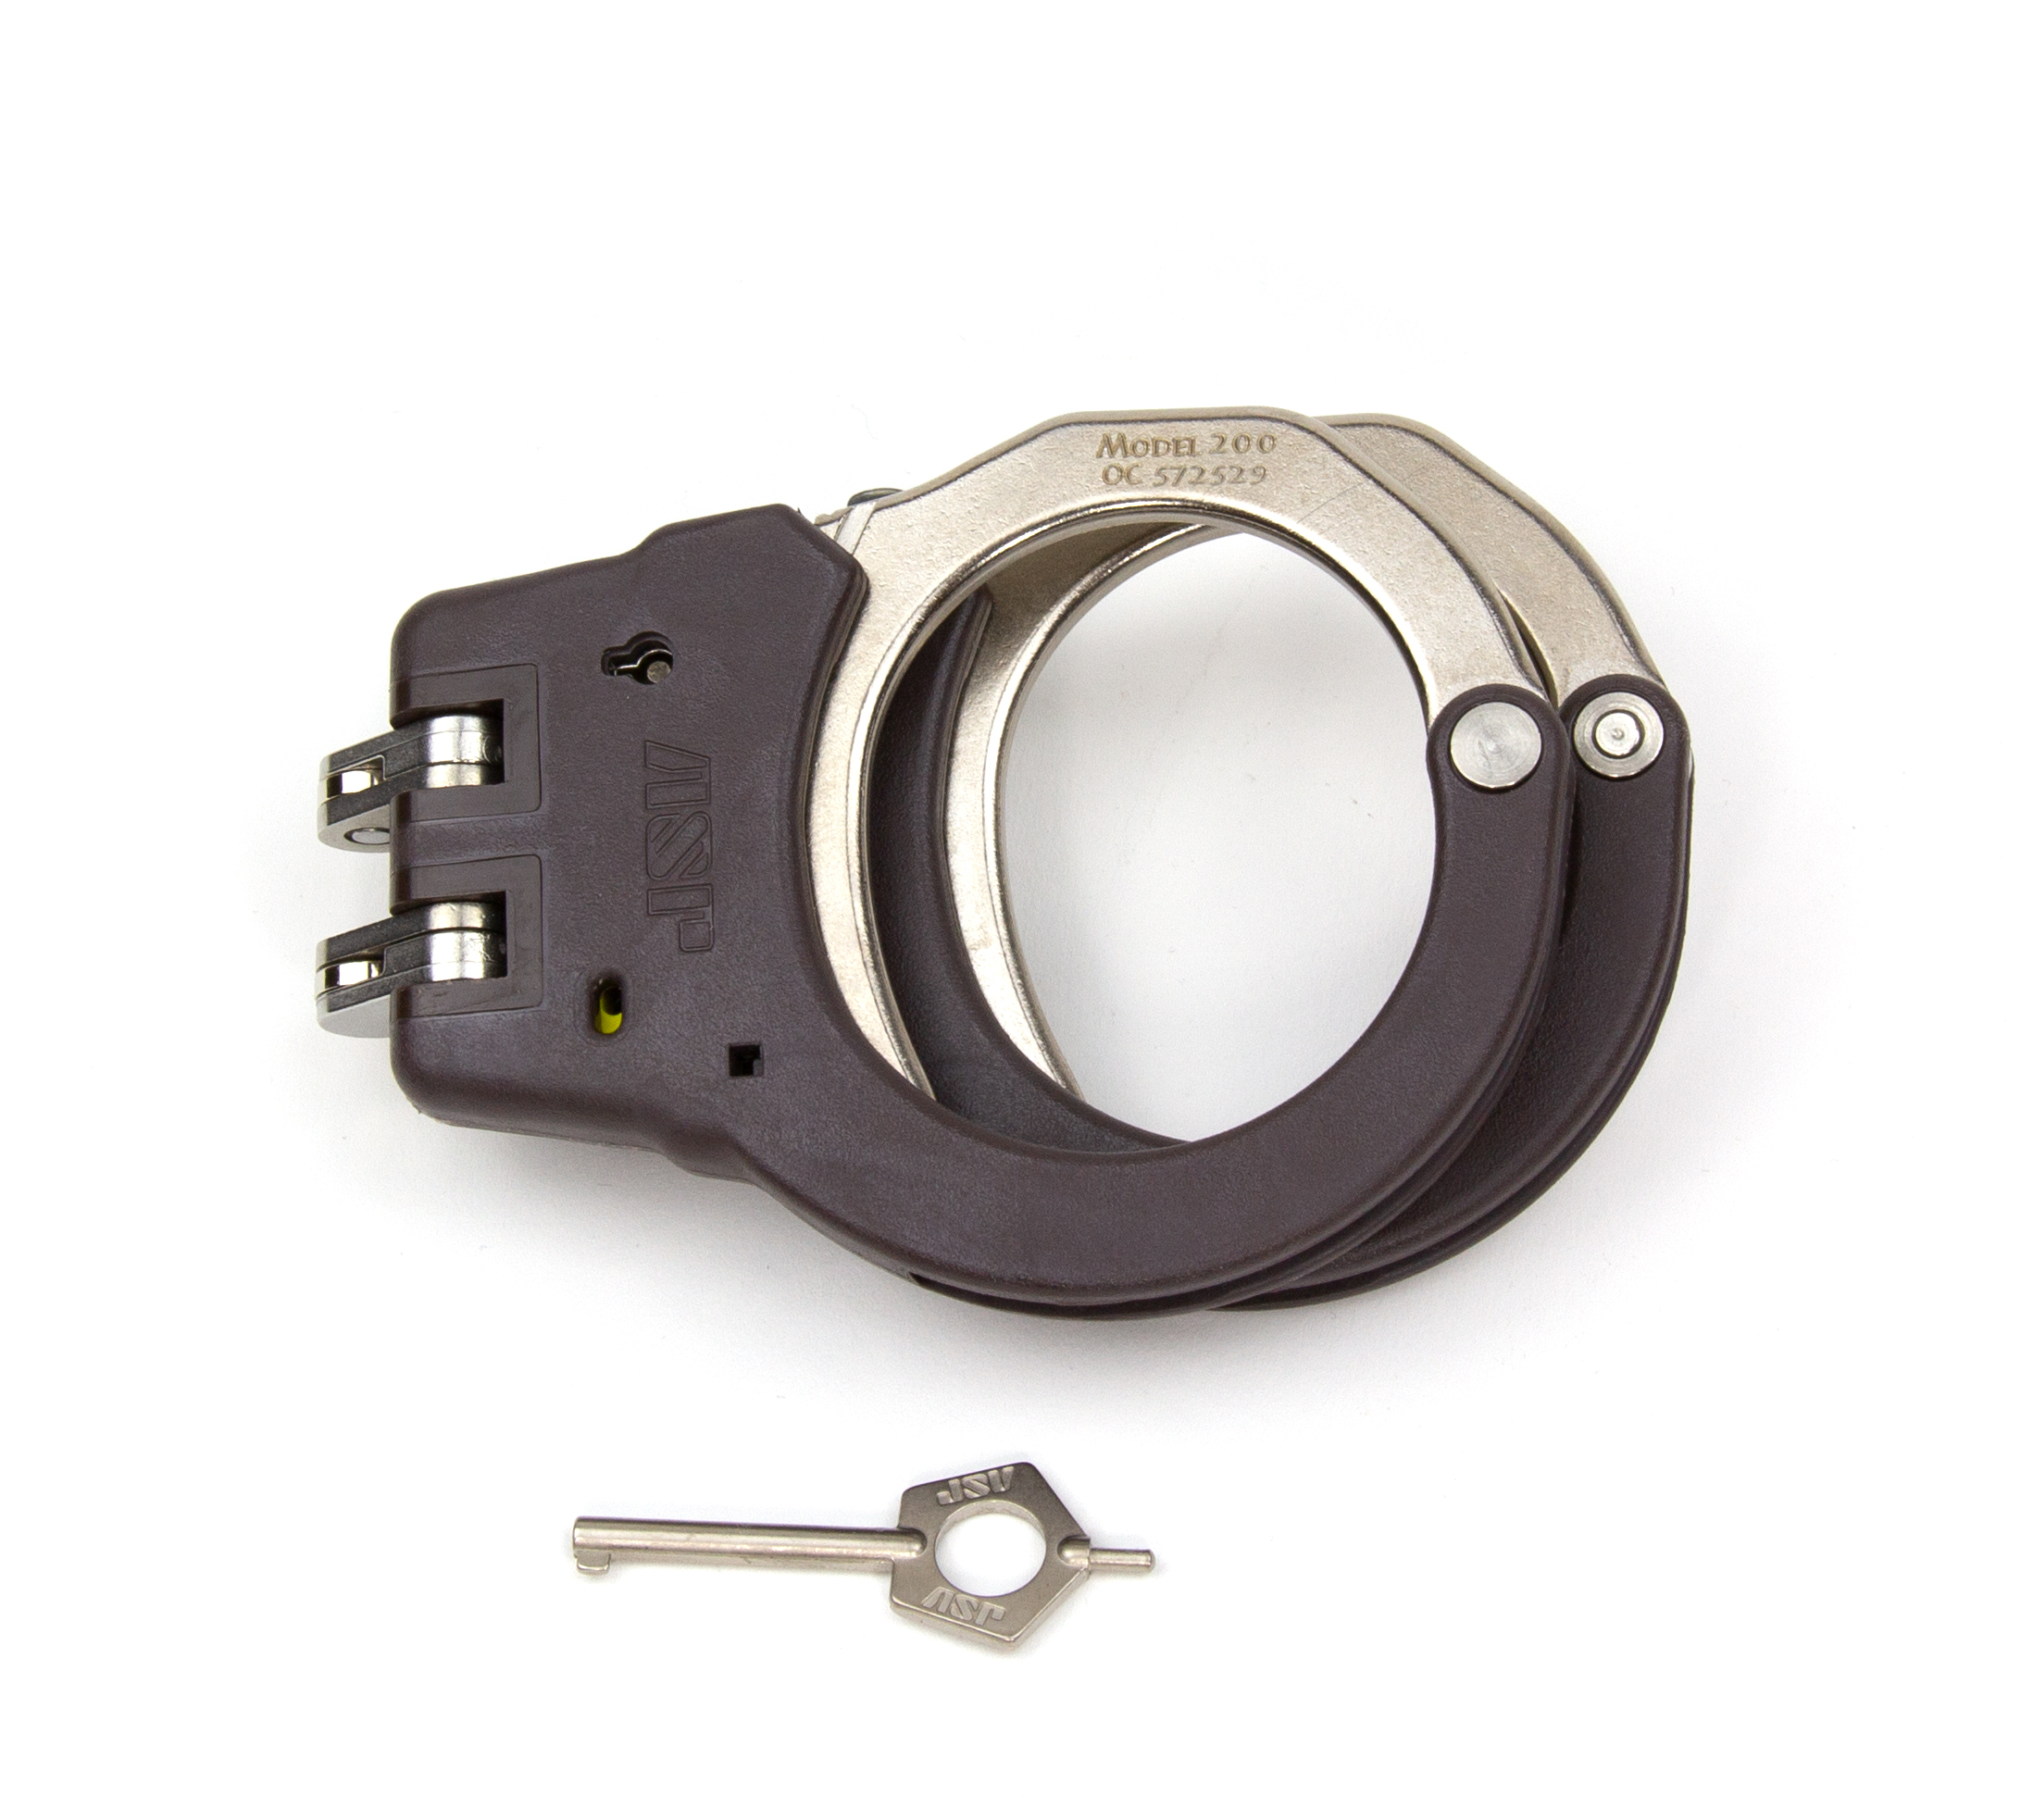 ASP Identifier Hinge Flex Cuffs Brown - 56115 / Model 200 Braun